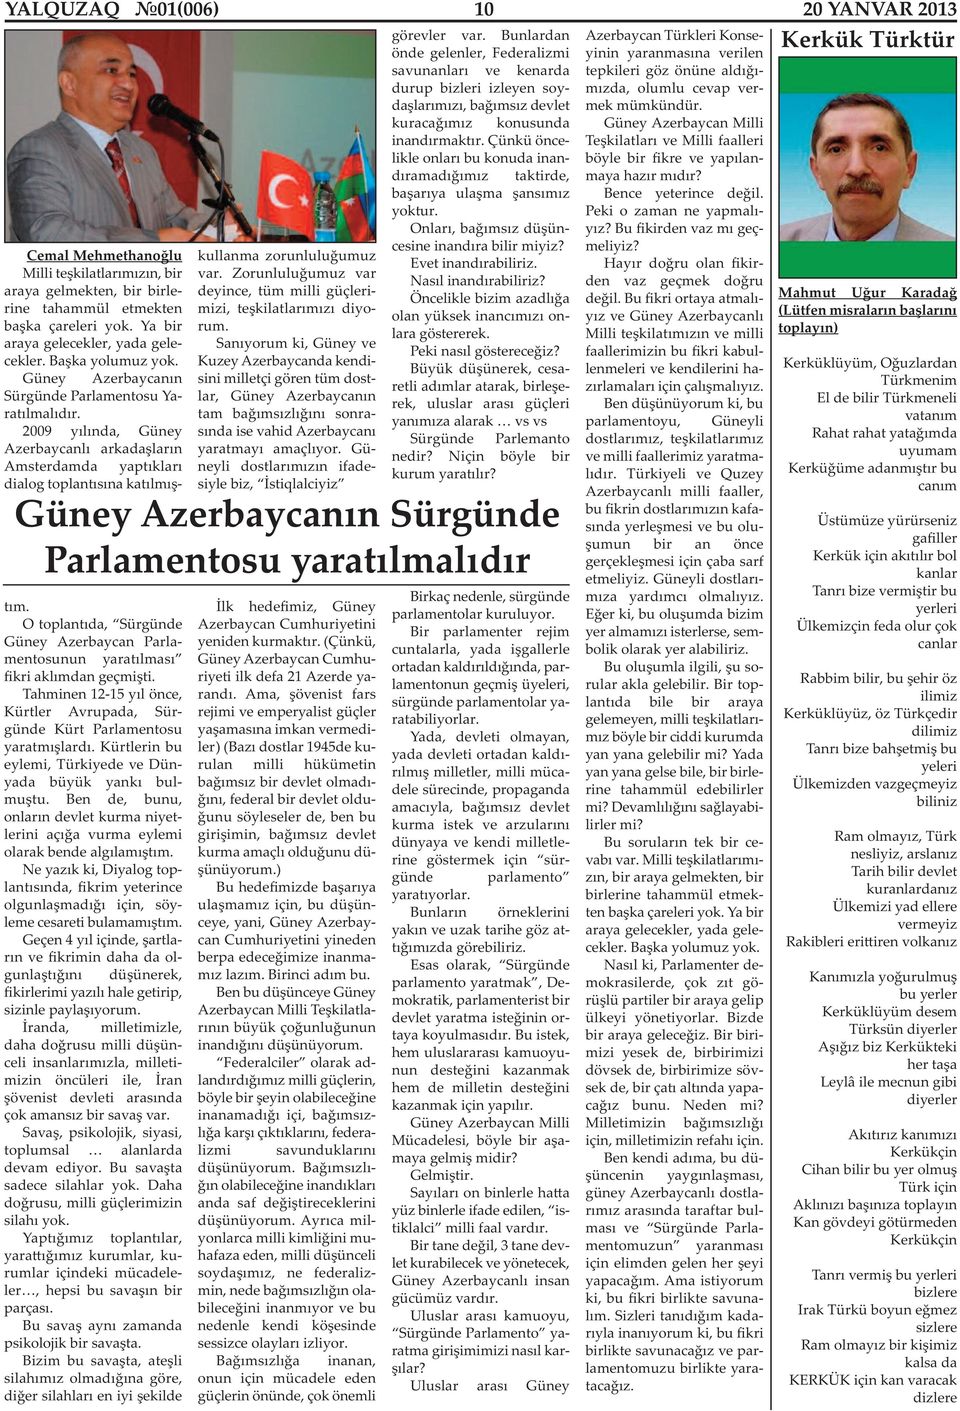 O toplantıda, Sürgünde Güney Azerbaycan Parlamentosunun yaratılması fikri aklımdan geçmişti. Tahminen 12-15 yıl önce, Kürtler Avrupada, Sürgünde Kürt Parlamentosu yaratmışlardı.